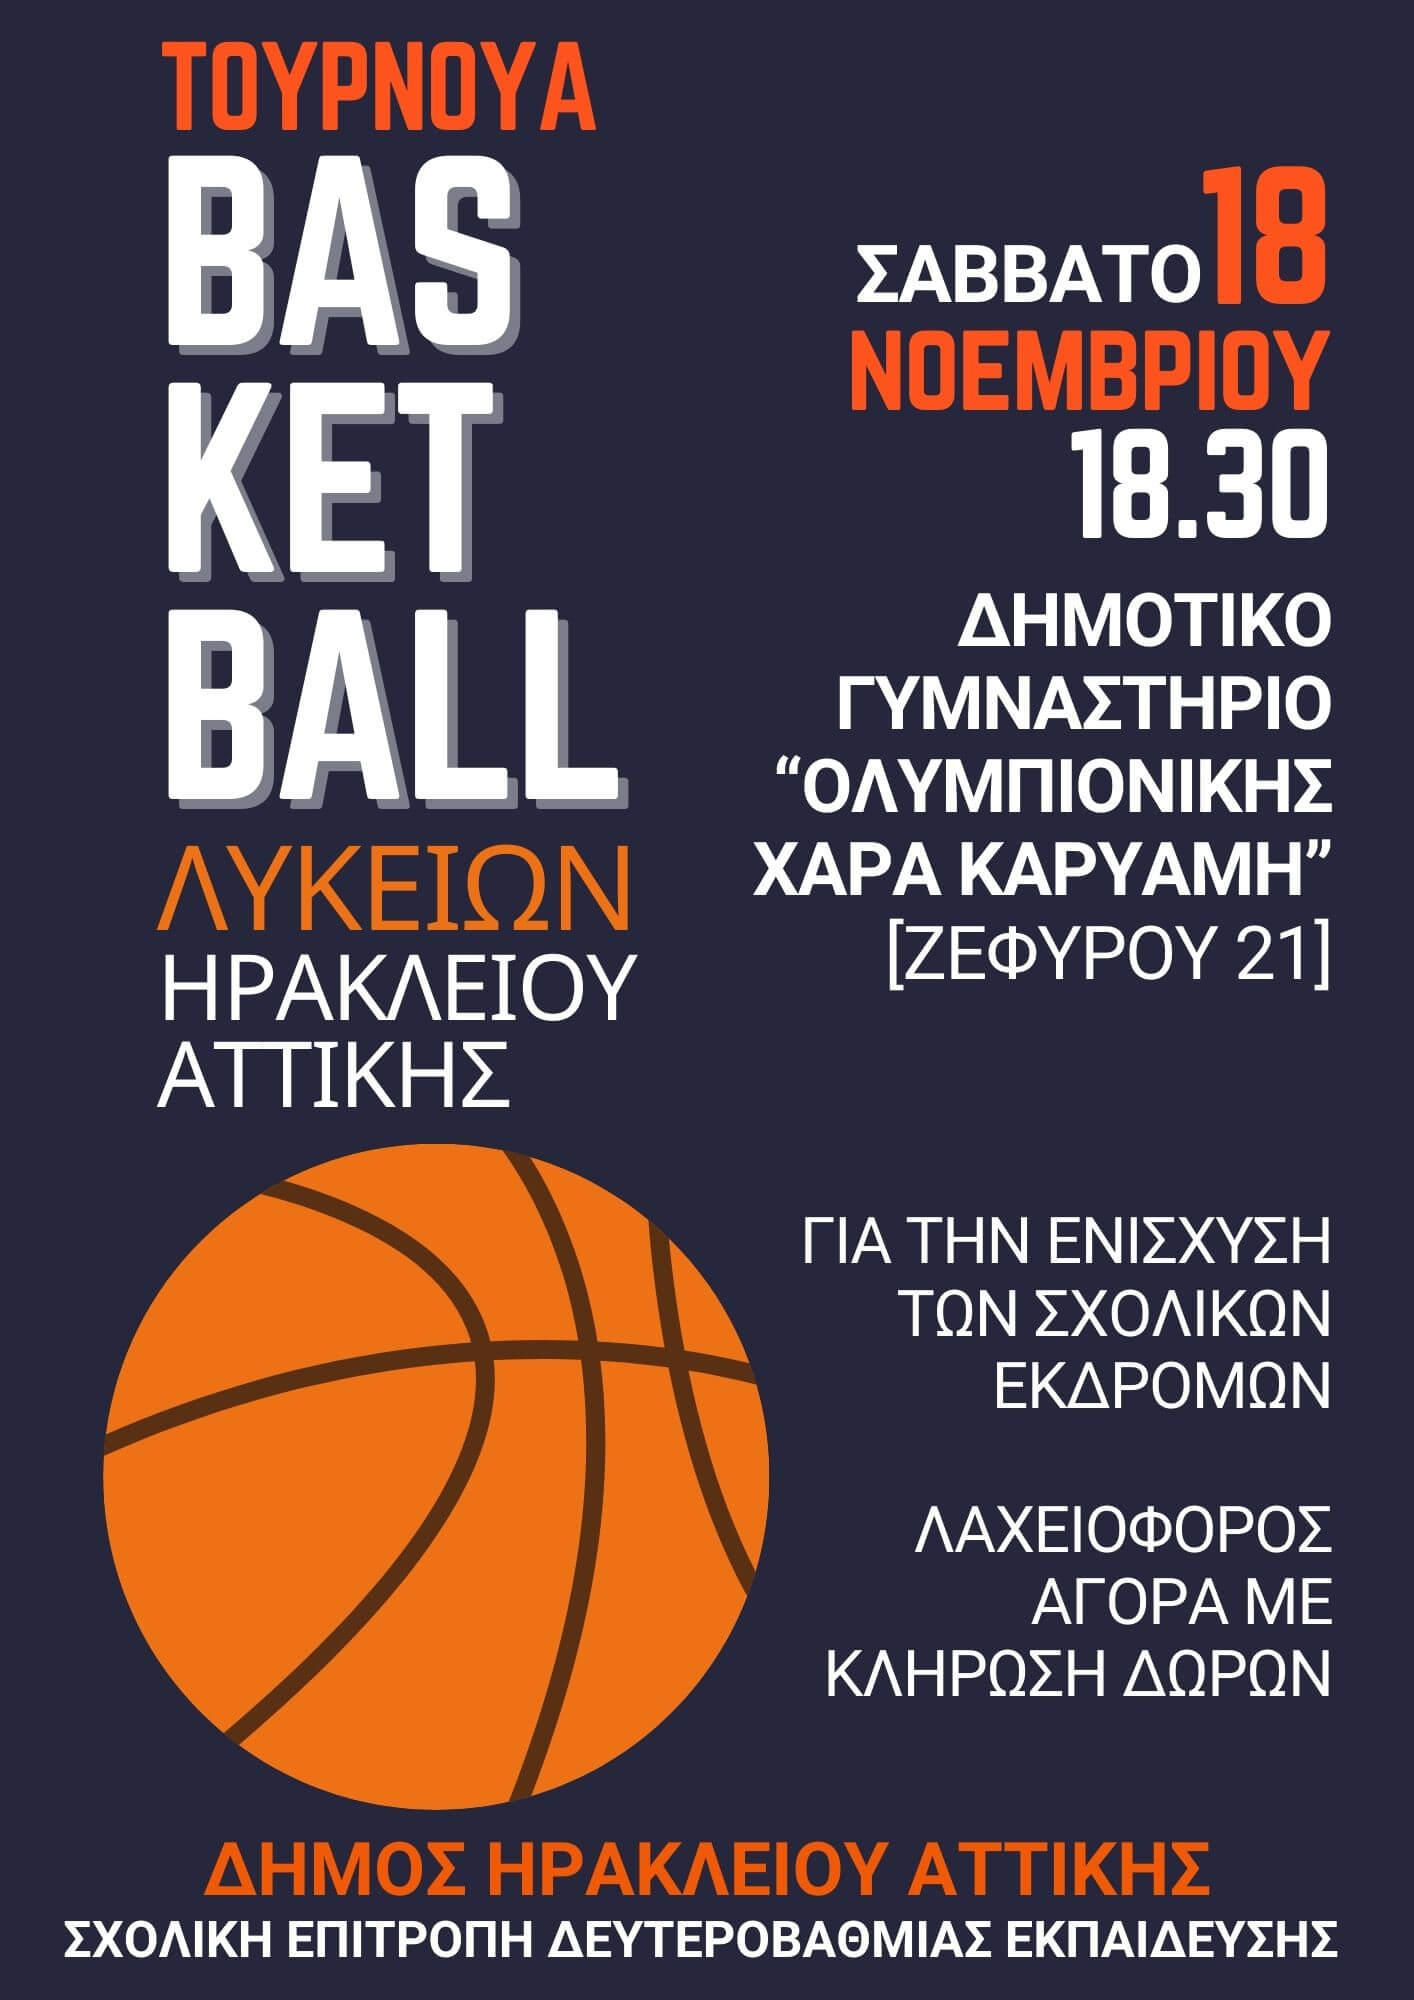 Τουρνουά μπάσκετ για την ενίσχυση των σχολικών εκδρομών στον Δήμο Ηρακλείου Αττικής